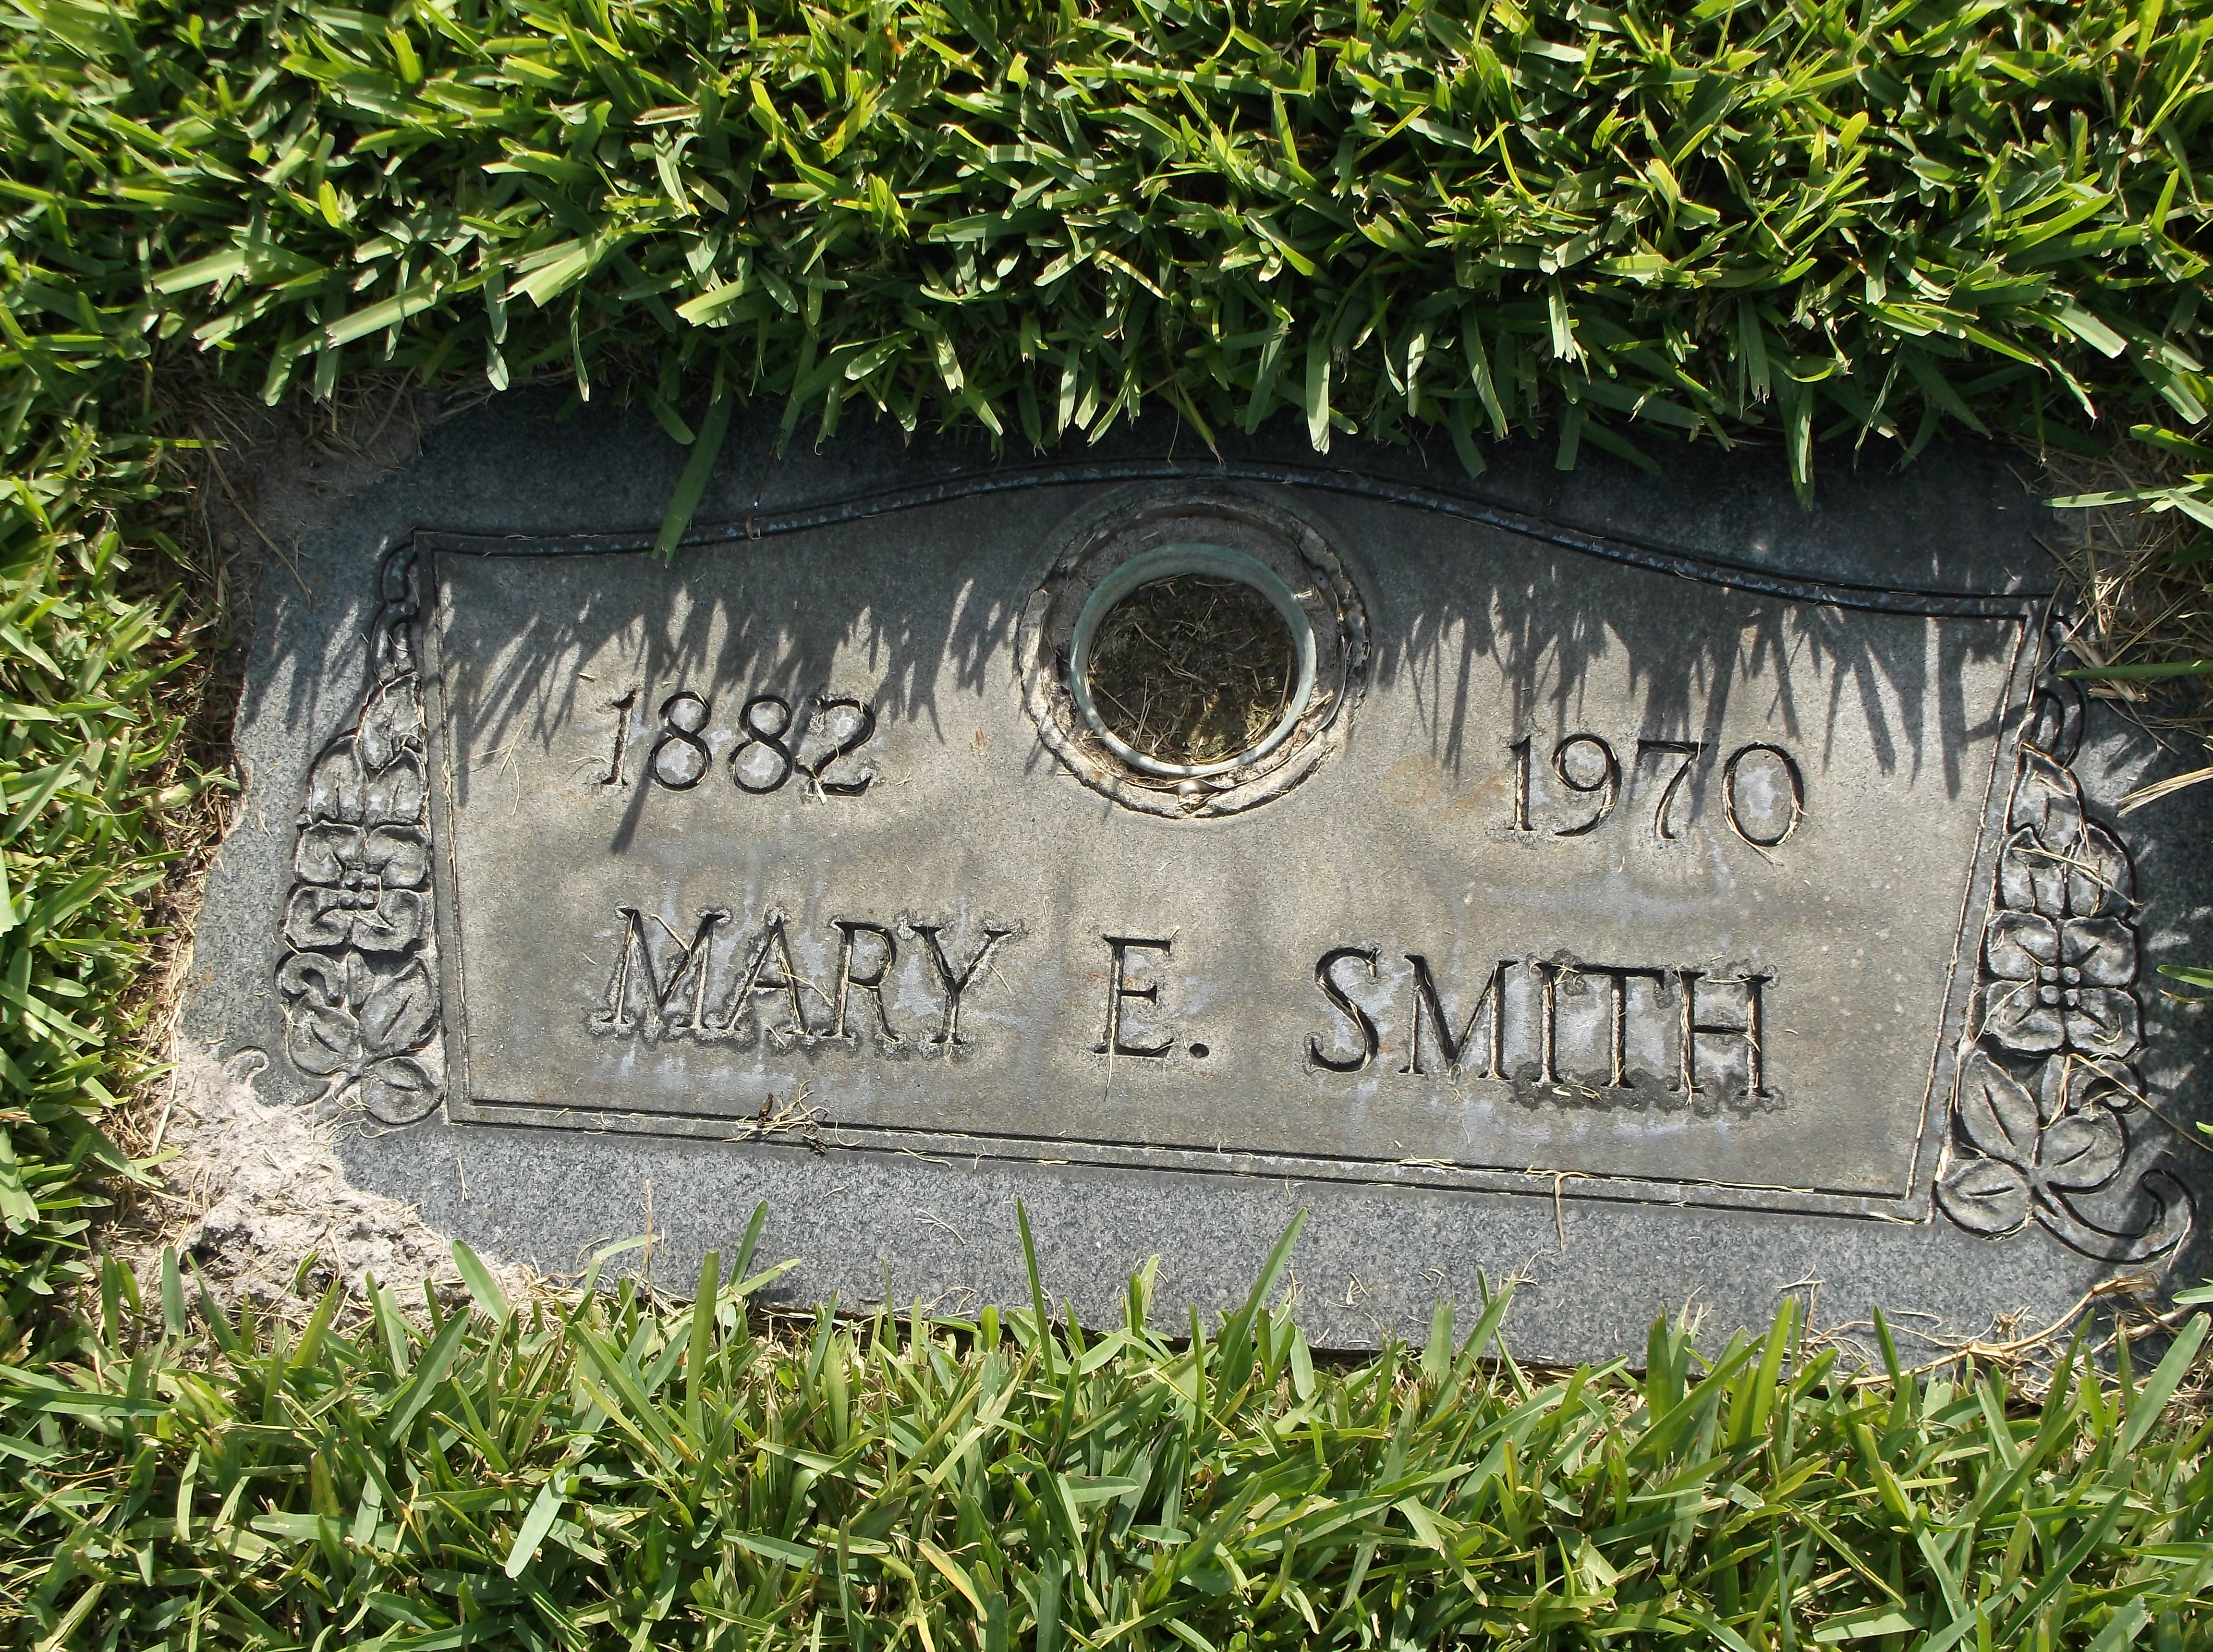 Mary E Smith